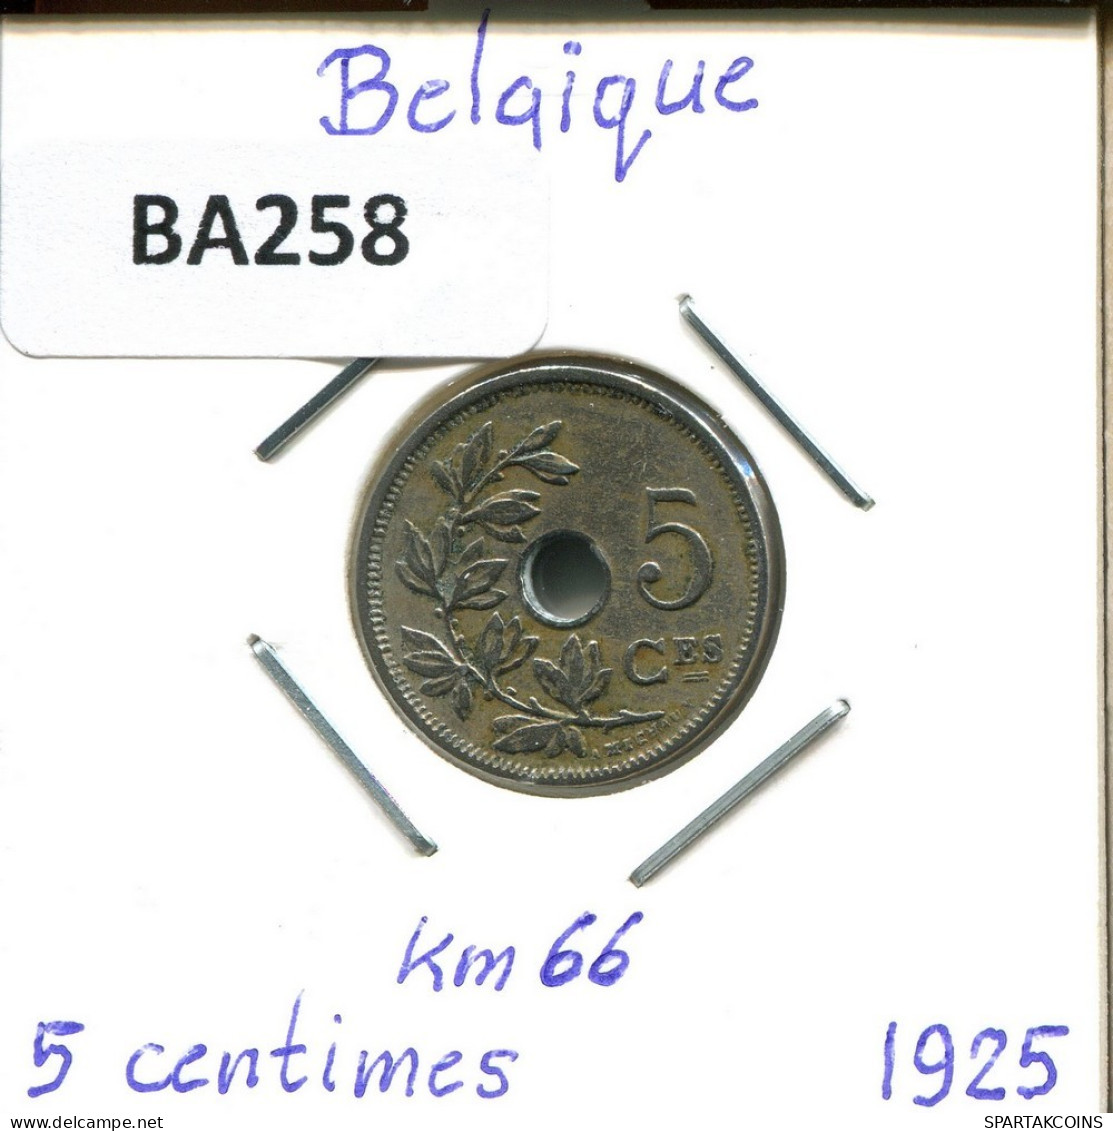 5 CENTIMES 1925 FRENCH Text BELGIQUE BELGIUM Pièce #BA258.F.A - 5 Centimes